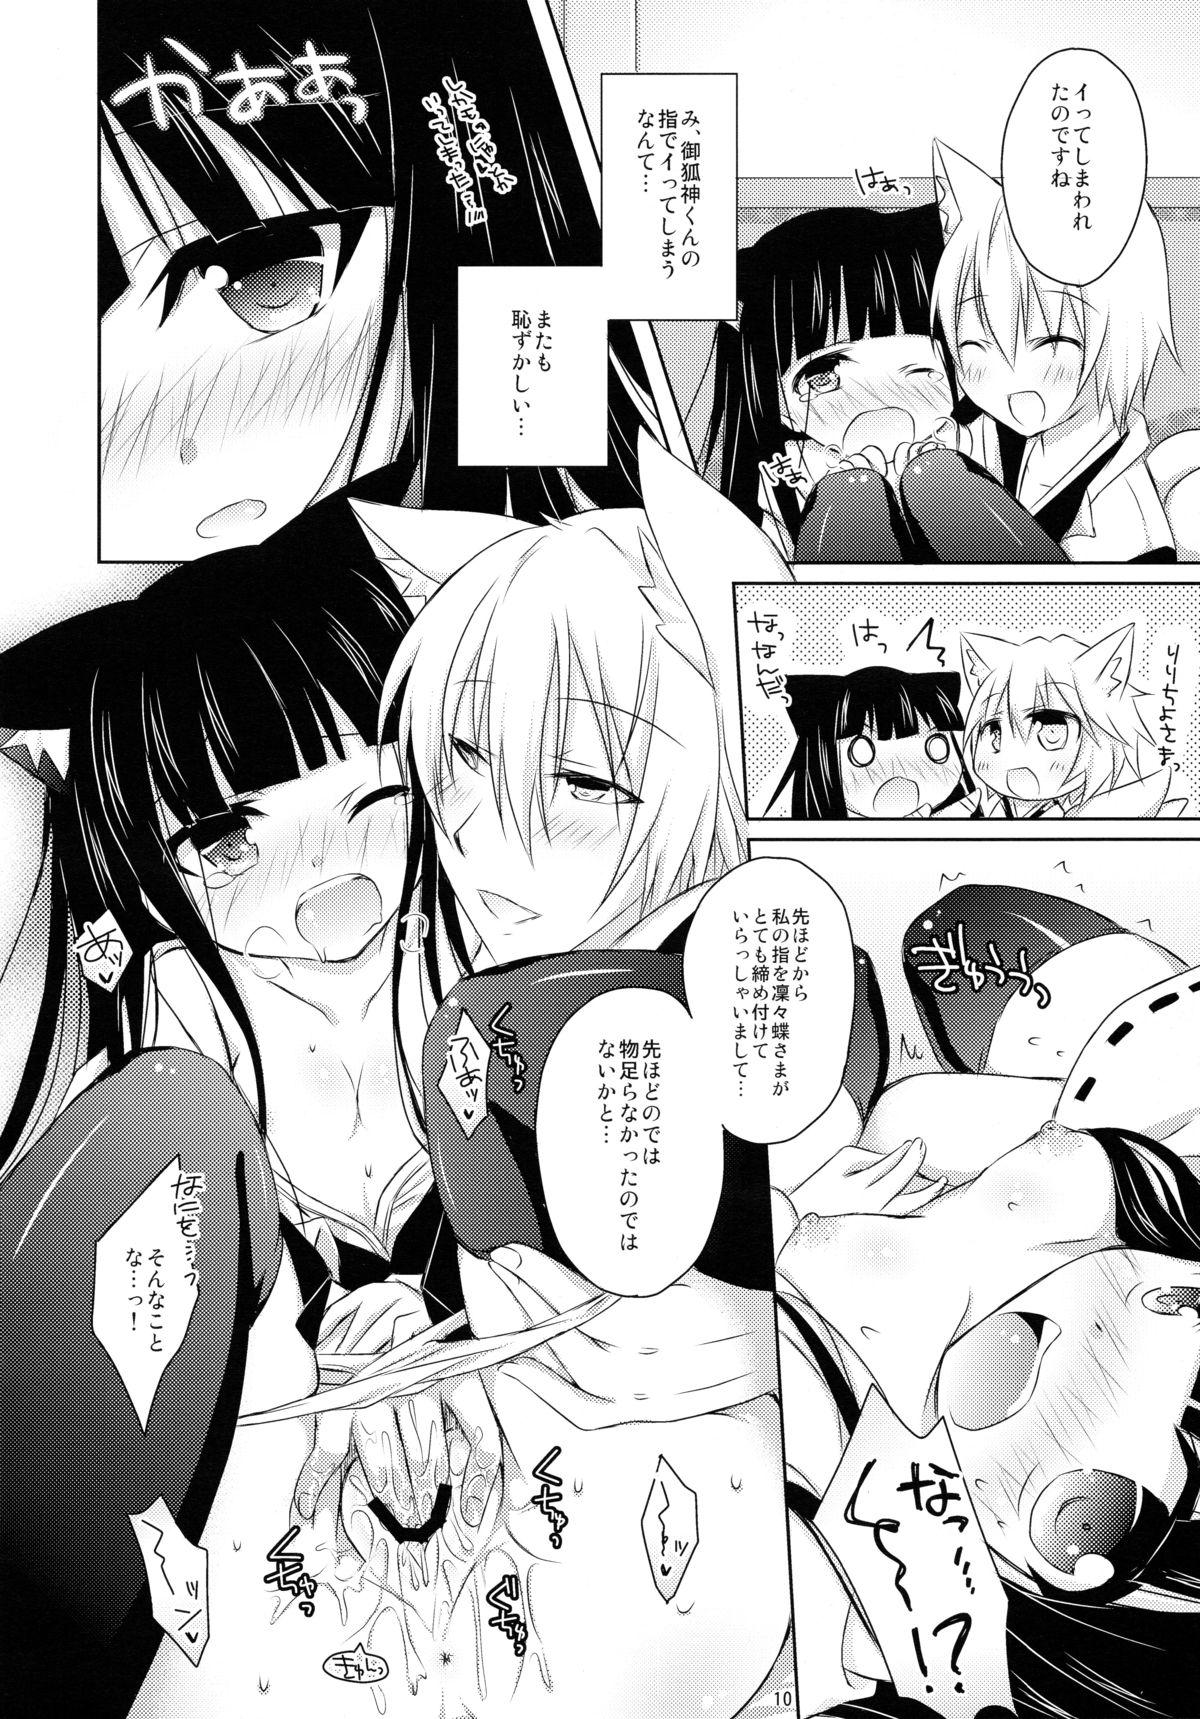 Transsexual Nekochiyo x Yuugi - Inu x boku ss Sissy - Page 10